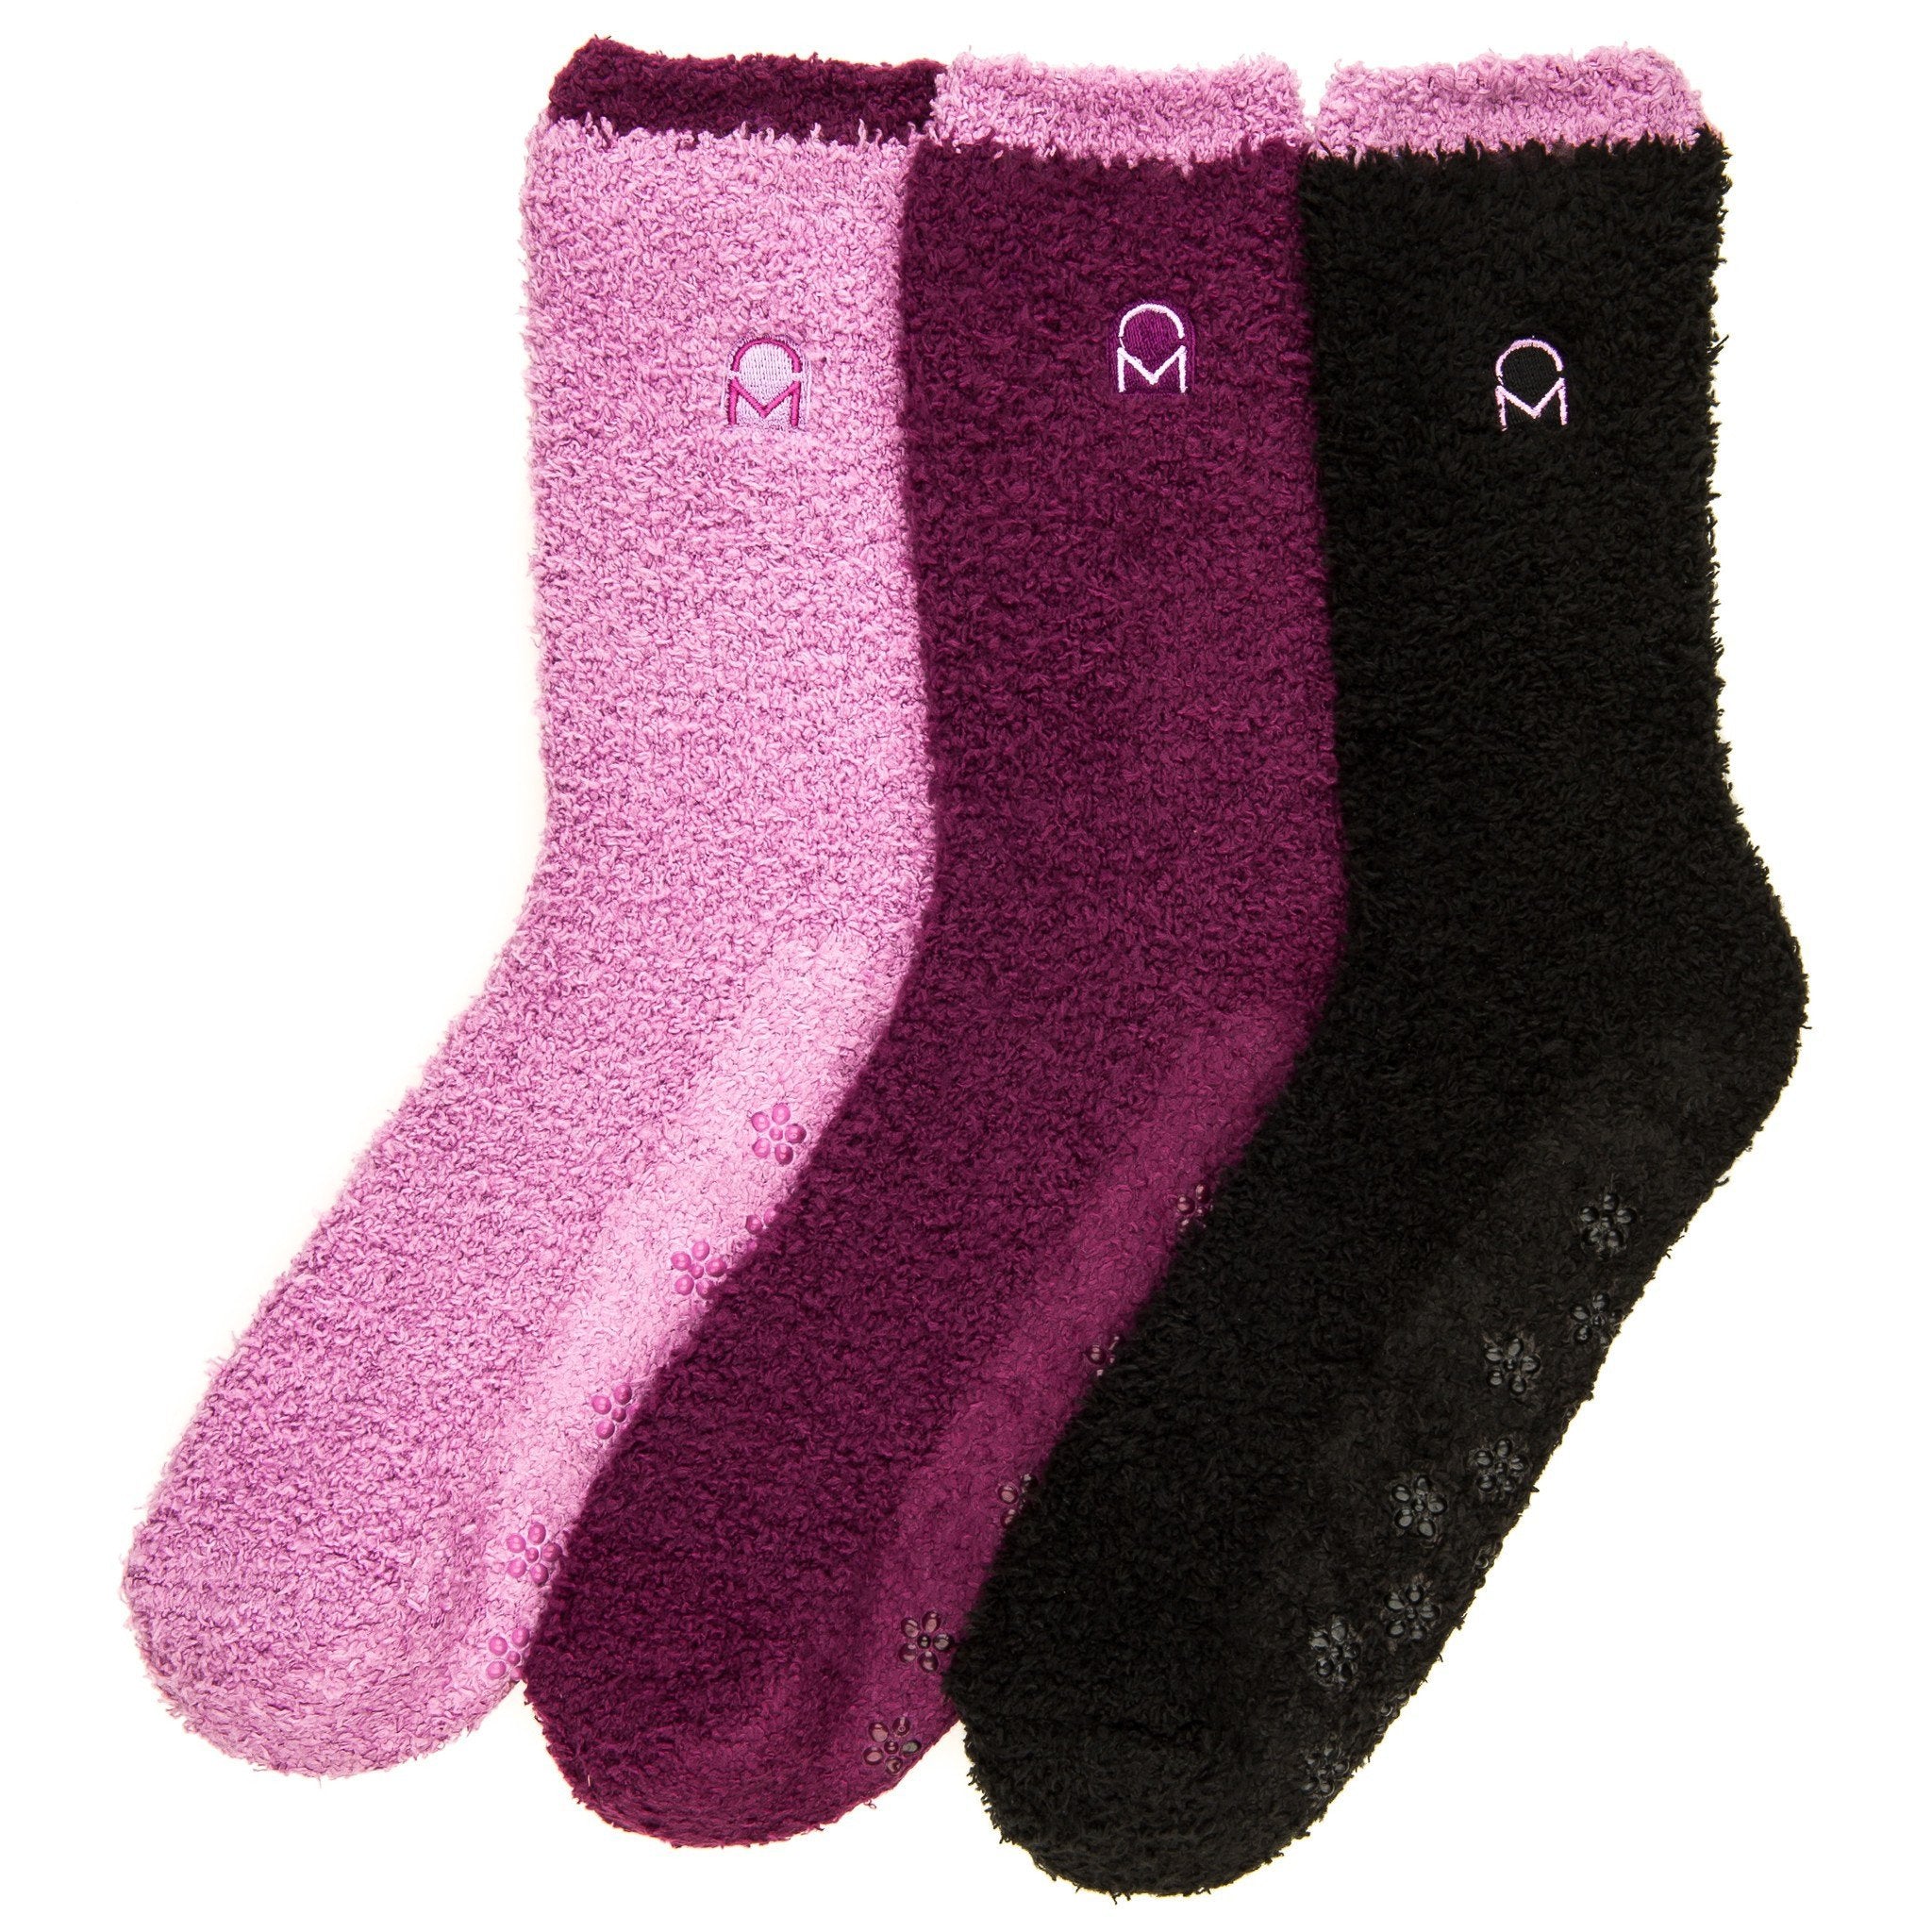 Women's (3 Pairs) Soft Anti-Skid Fuzzy Winter Crew Socks - Set B3